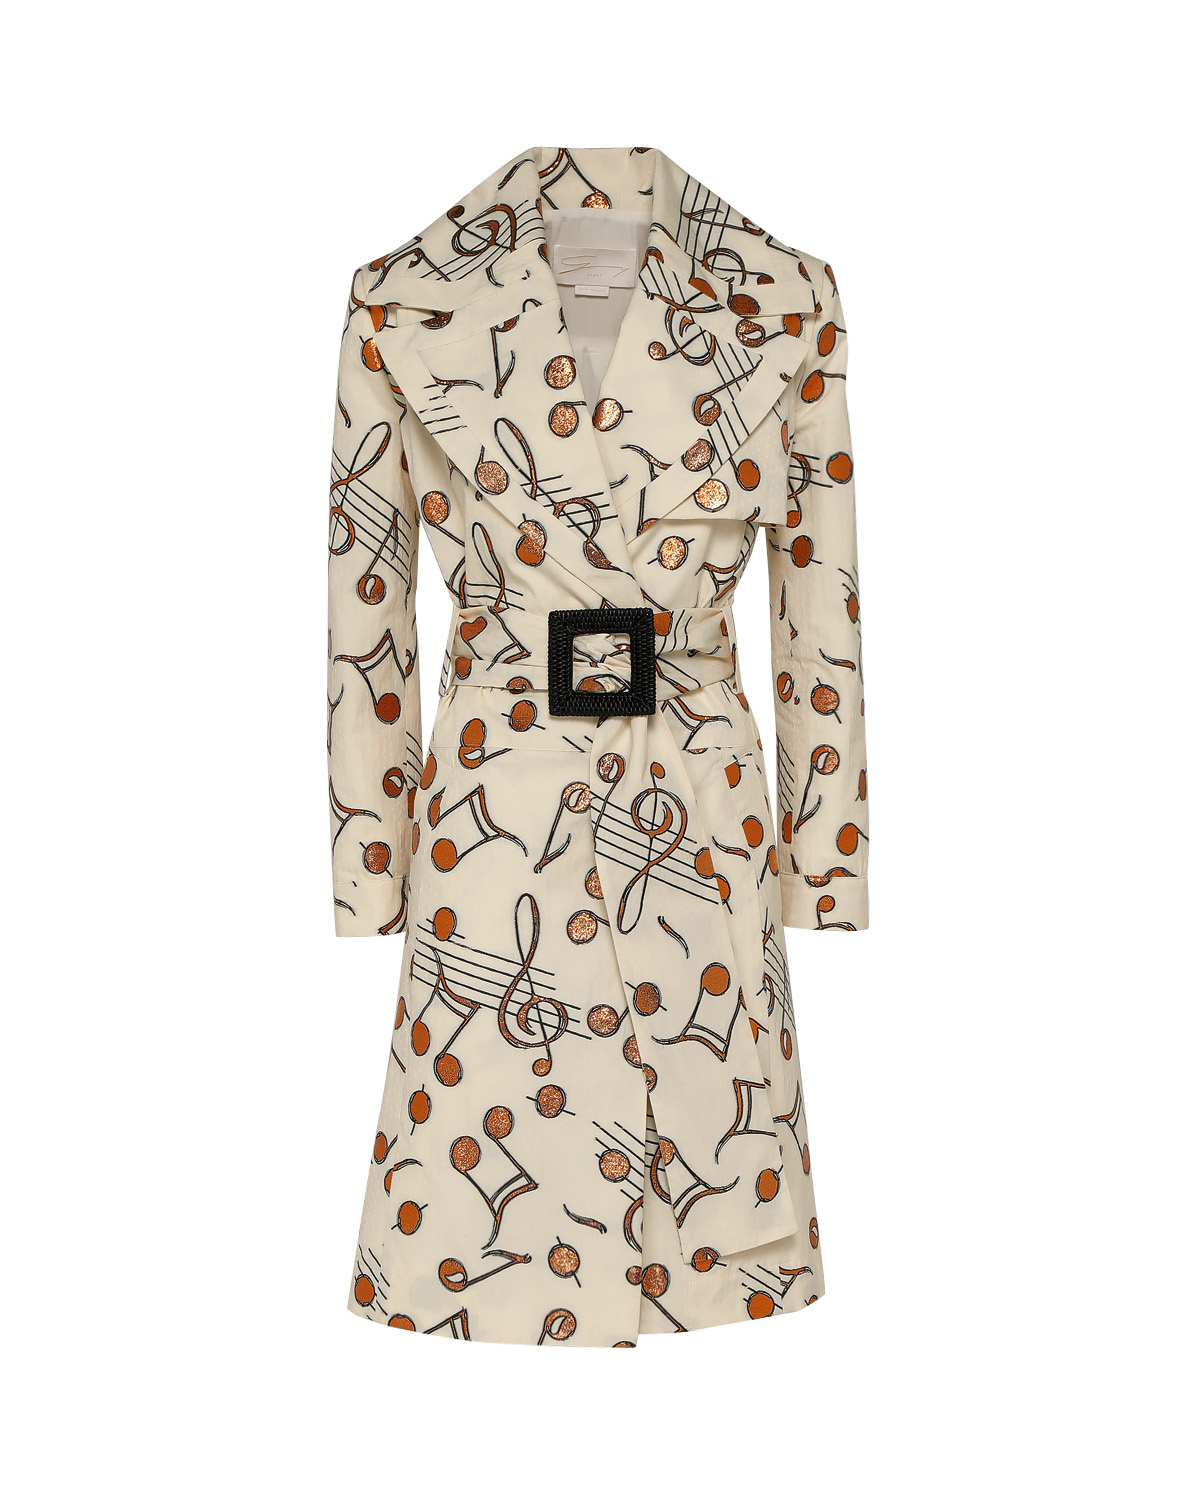 Louis Vuitton Women's Trench Coats - Clothing